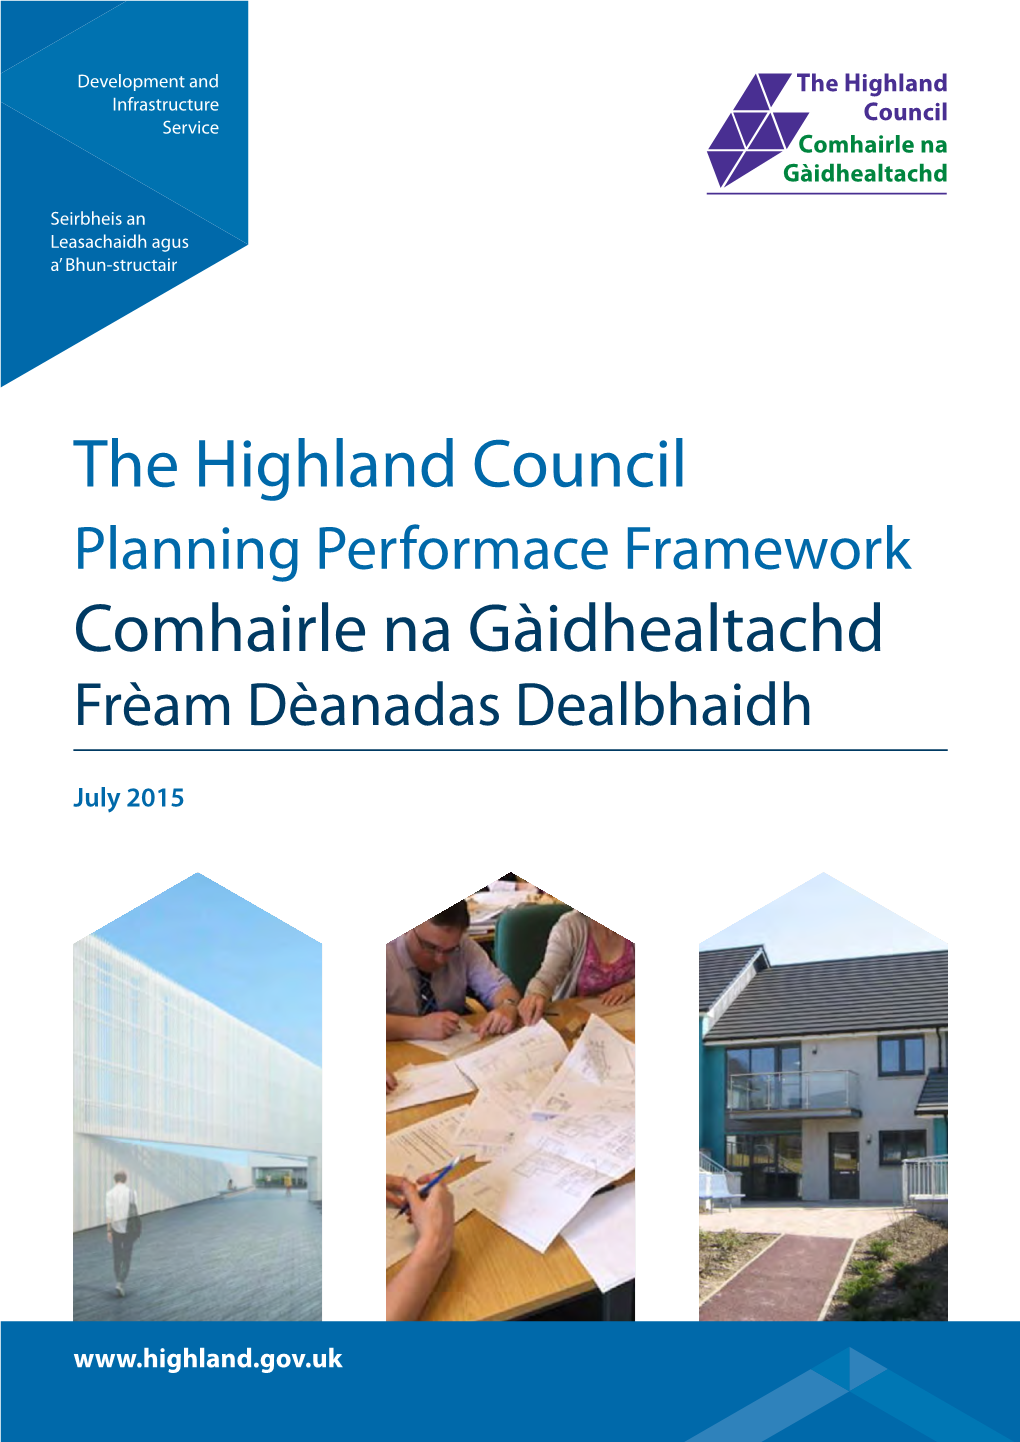 The Highland Council Comhairle Na Gàidhealtachd